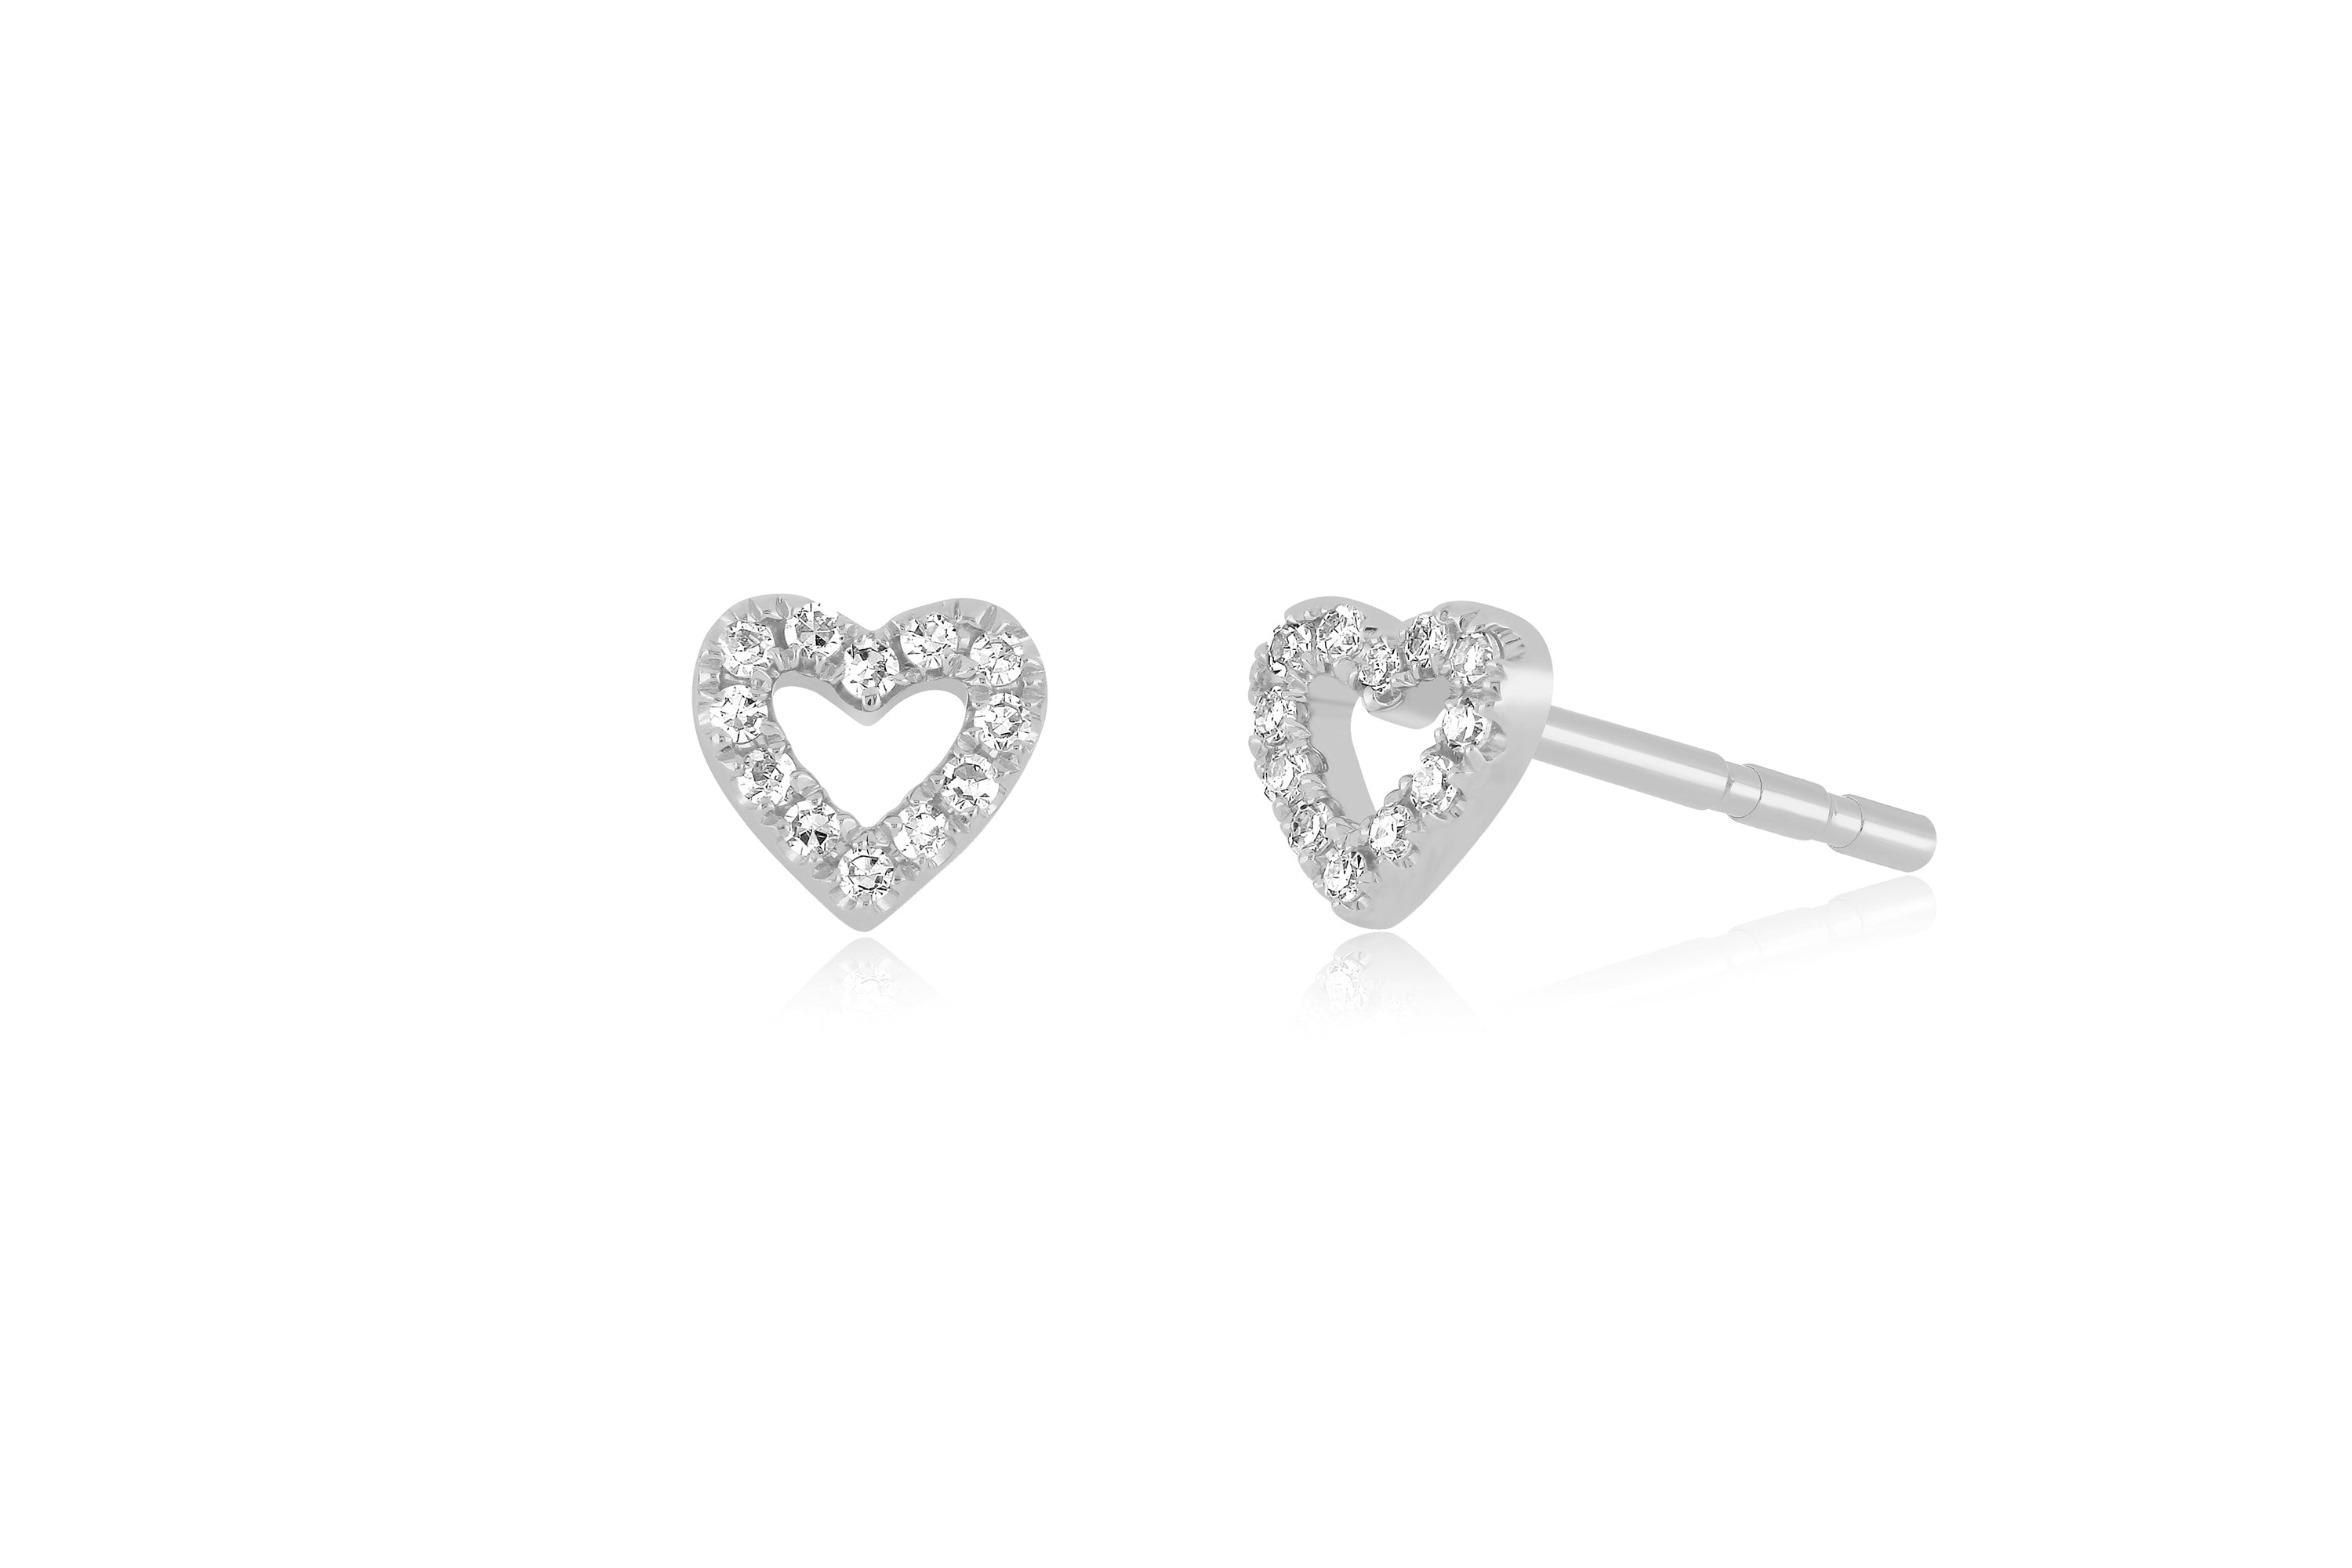 14k (karat) white gold open heart-shaped stud earring with diamonds